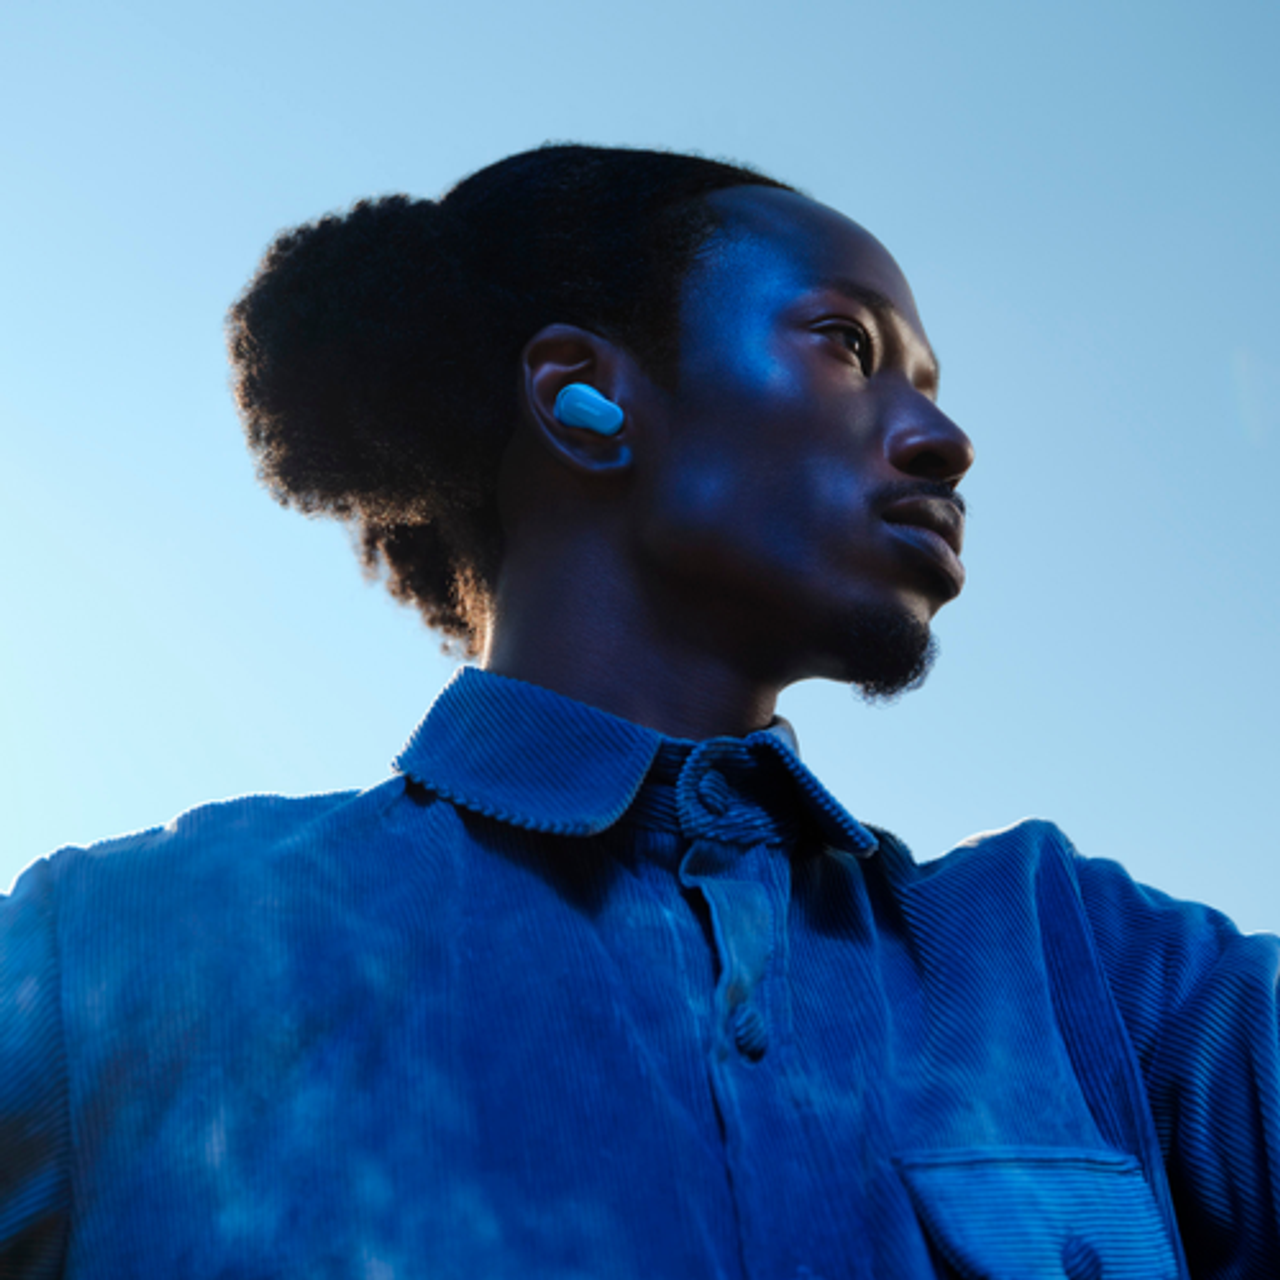 Bose - QuietComfort Ultra True Wireless Noise Cancelling In-Ear Earbuds - Moonstone Blue